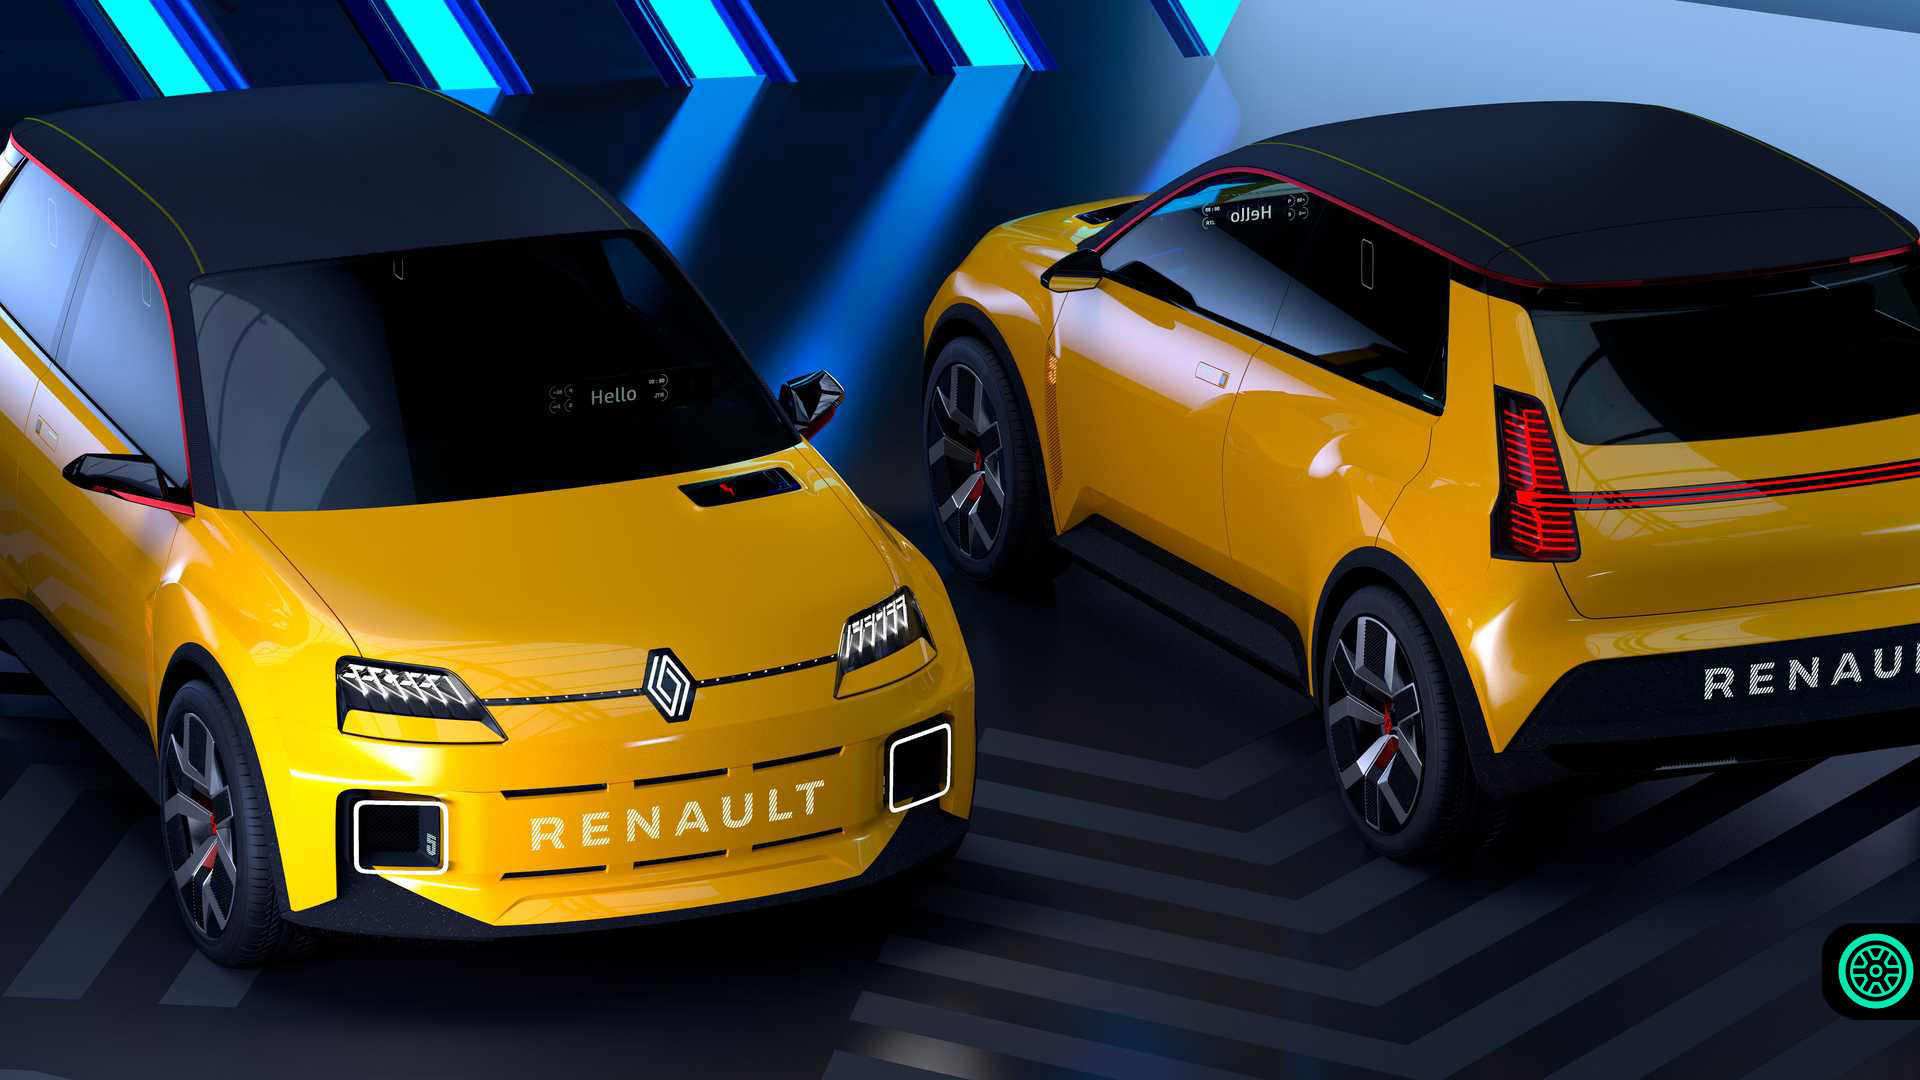 2030 Renault elektrische auto